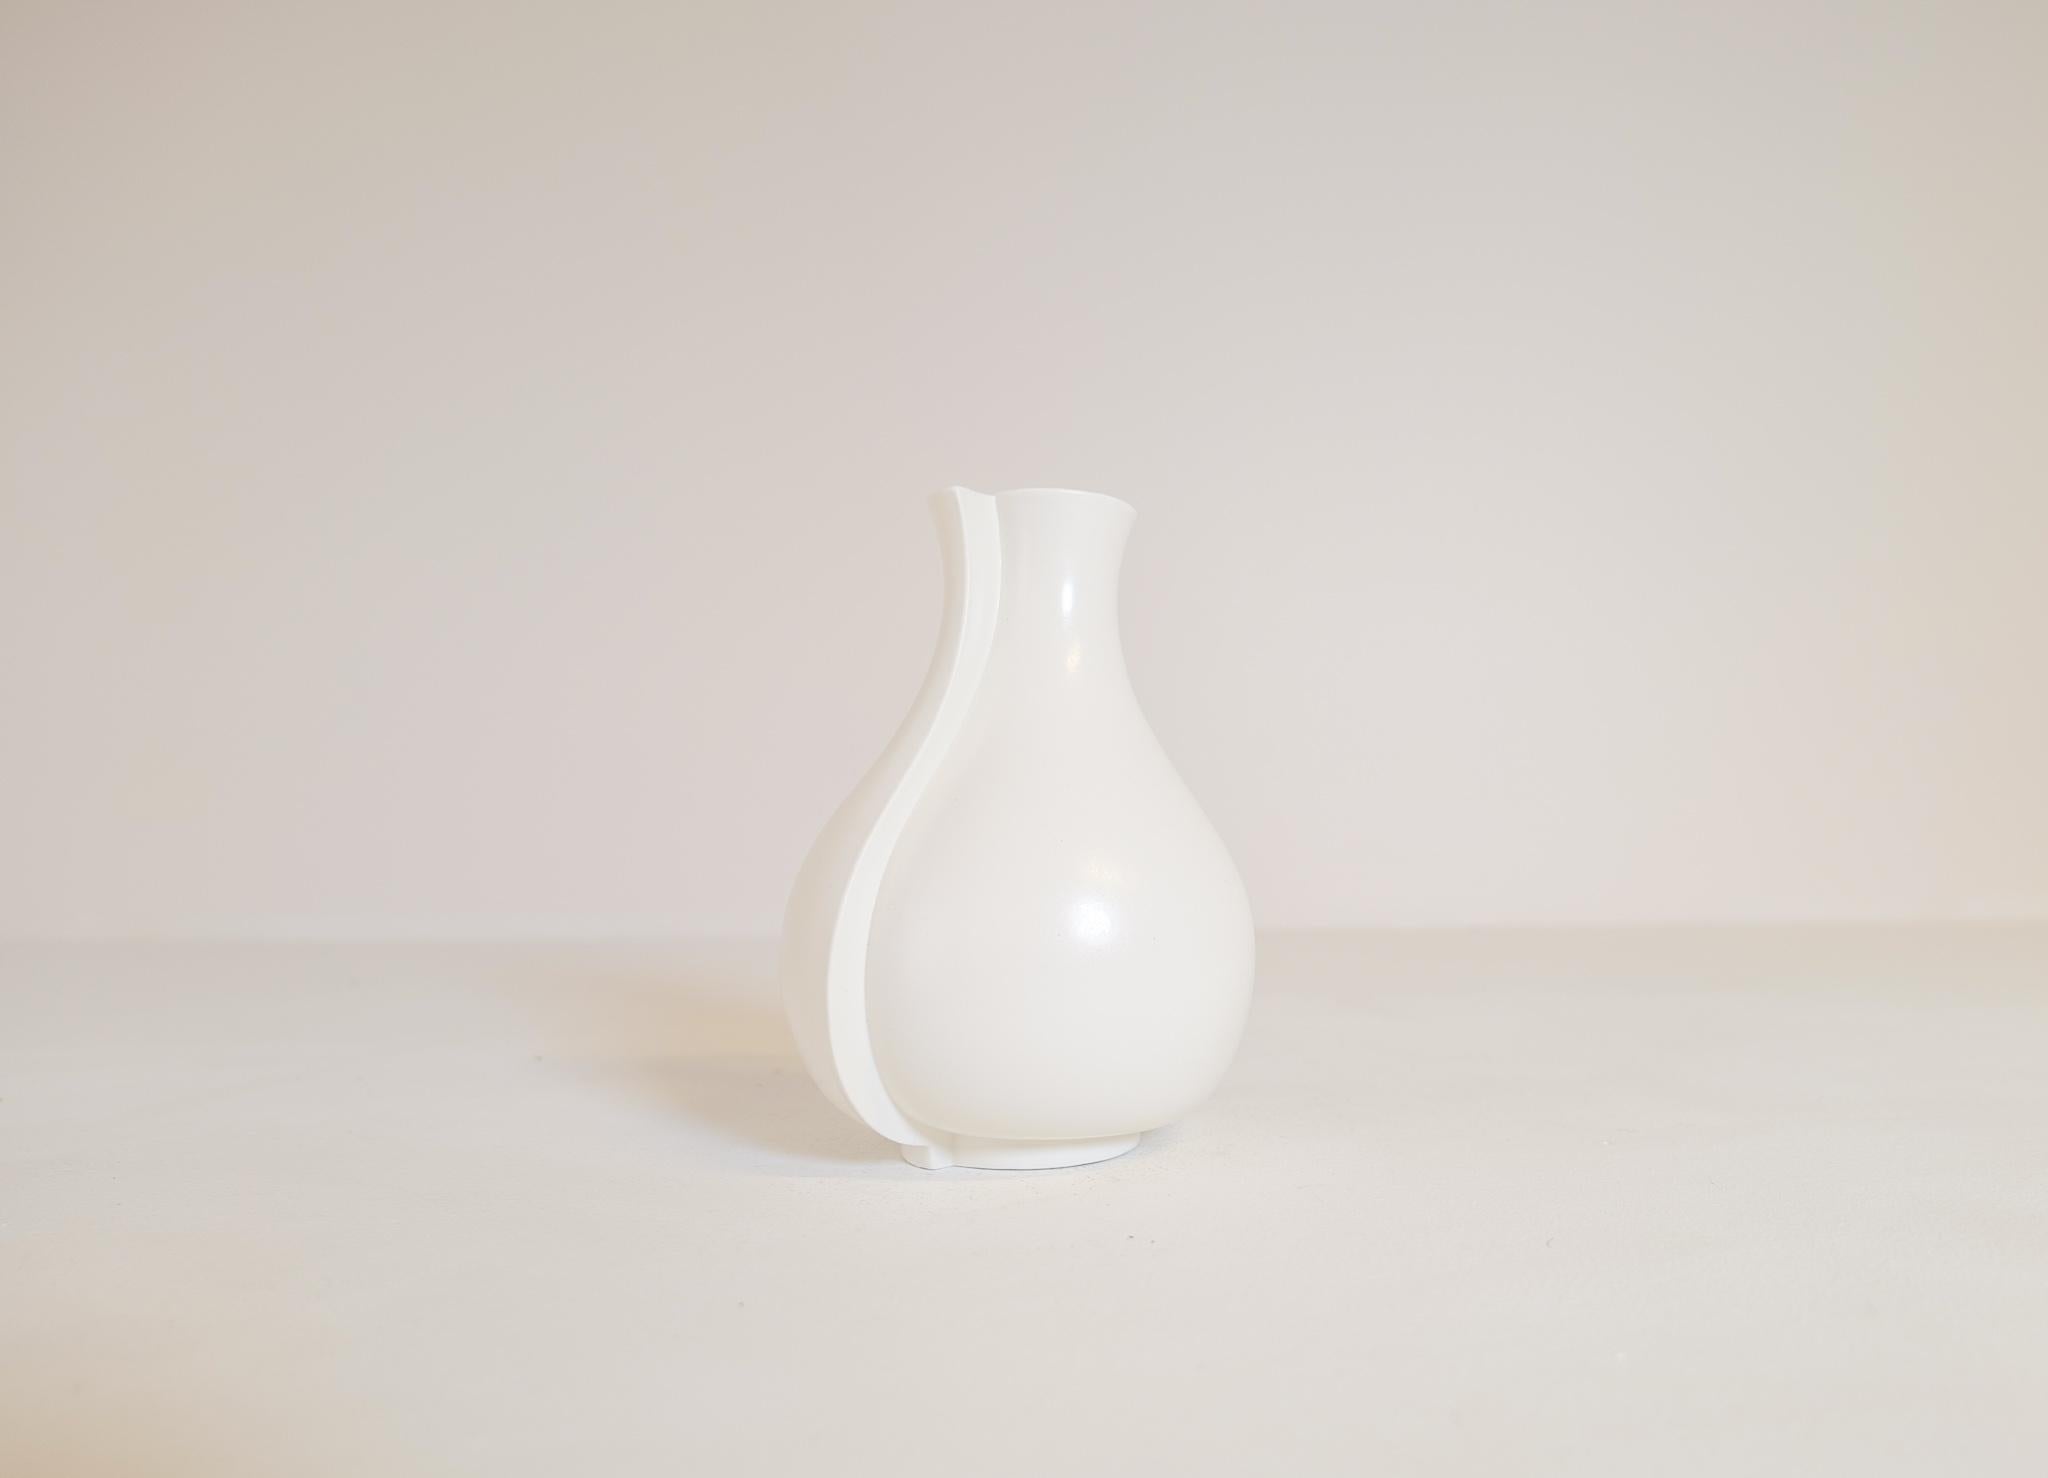 Diese abstrakte, mattweiße Steinzeugvase mit dem Namen Surrea (surreal) wurde von Wilhelm Kåge in den 1950er Jahren entworfen und in Gustavsberg, Schweden, hergestellt. Diese Vase eignet sich perfekt für ein modernes Haus. 

Wir haben mehr von